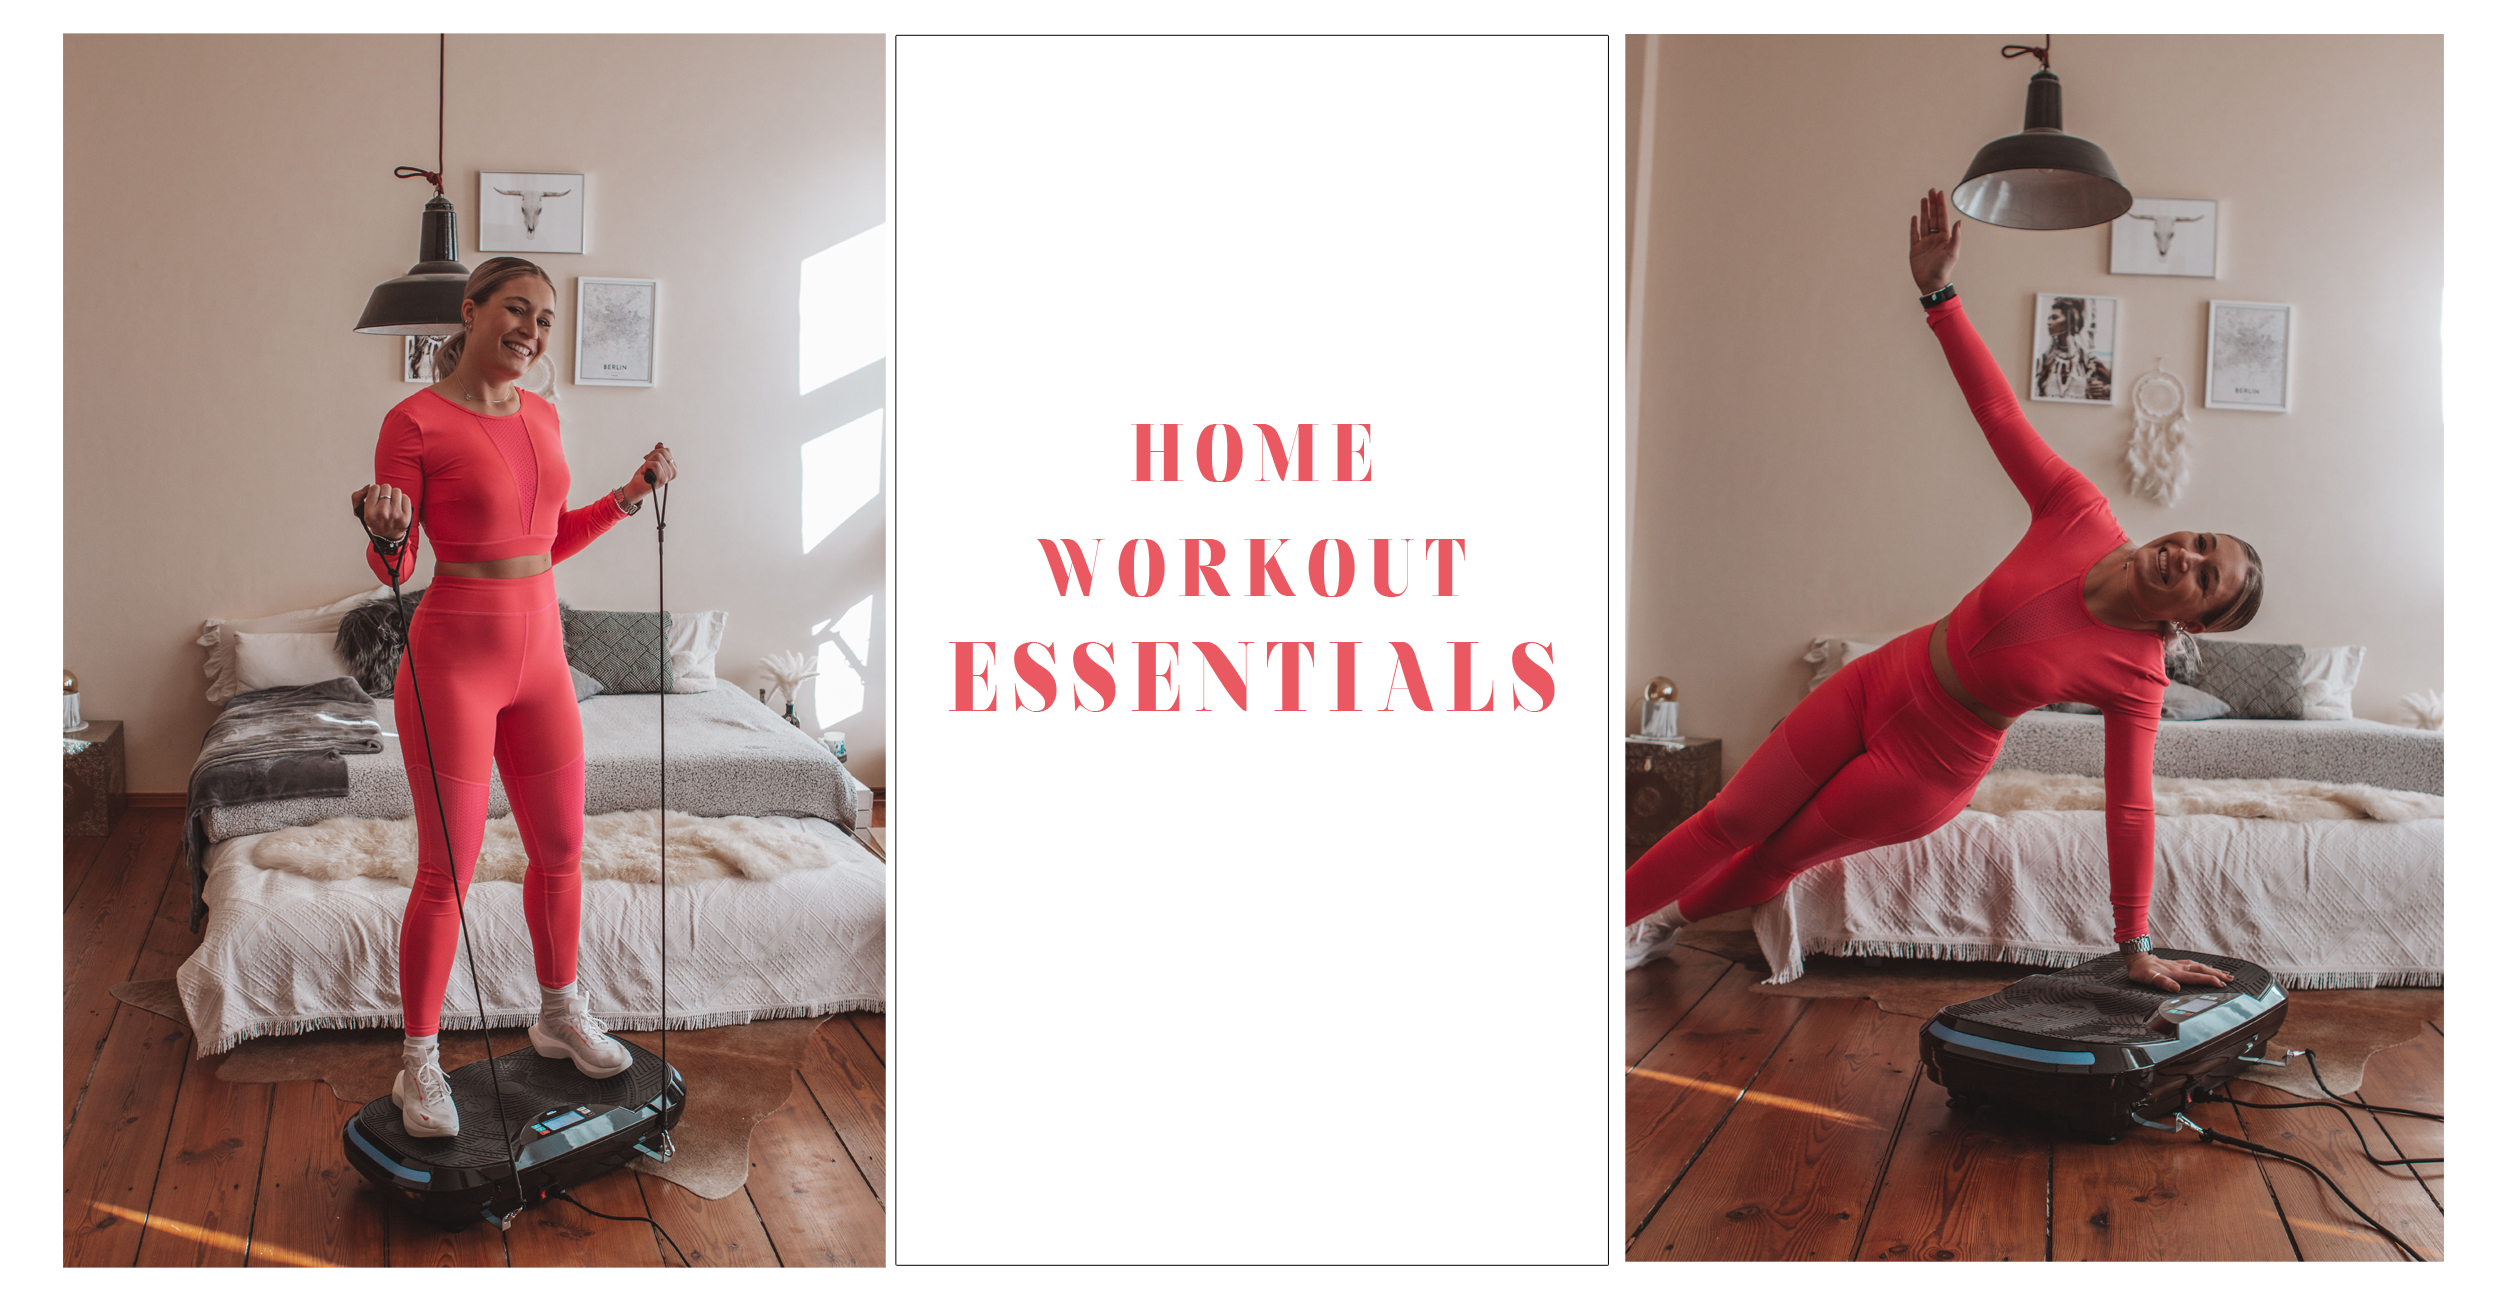 home workout-equipment-weights-yoga-pilates-kraftsport-essentials-zuhause trainieren-miweba-gym-workout essentials-fitness blogger-fit-berlin-munich-laufband-gym essentials9